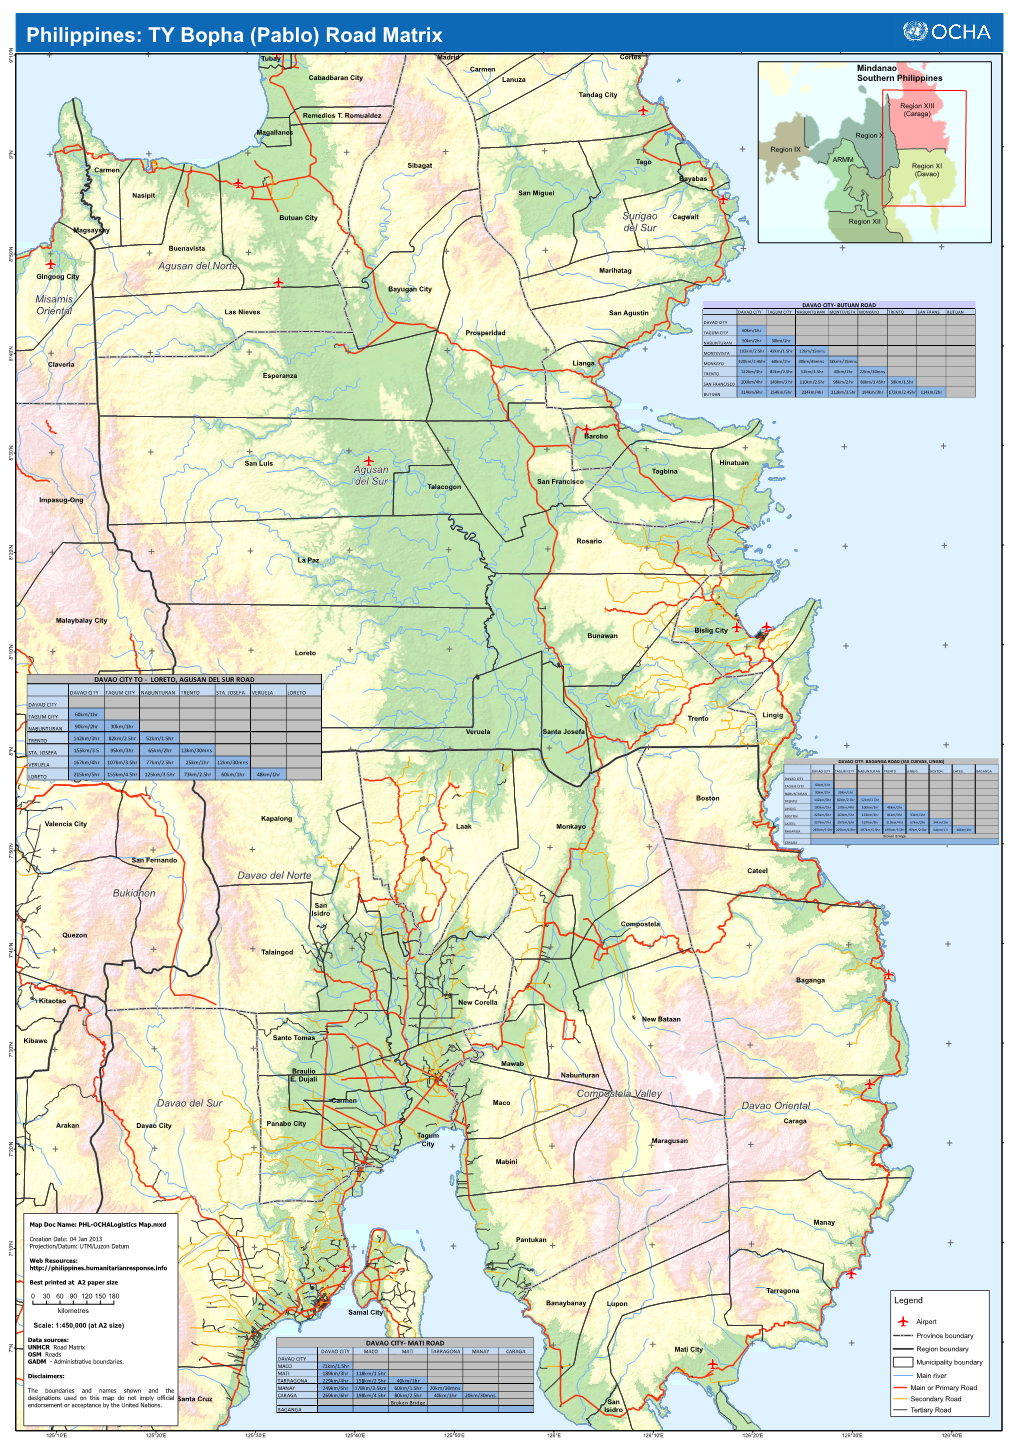 PHI-OCHA Logistics Map 04Dec2012